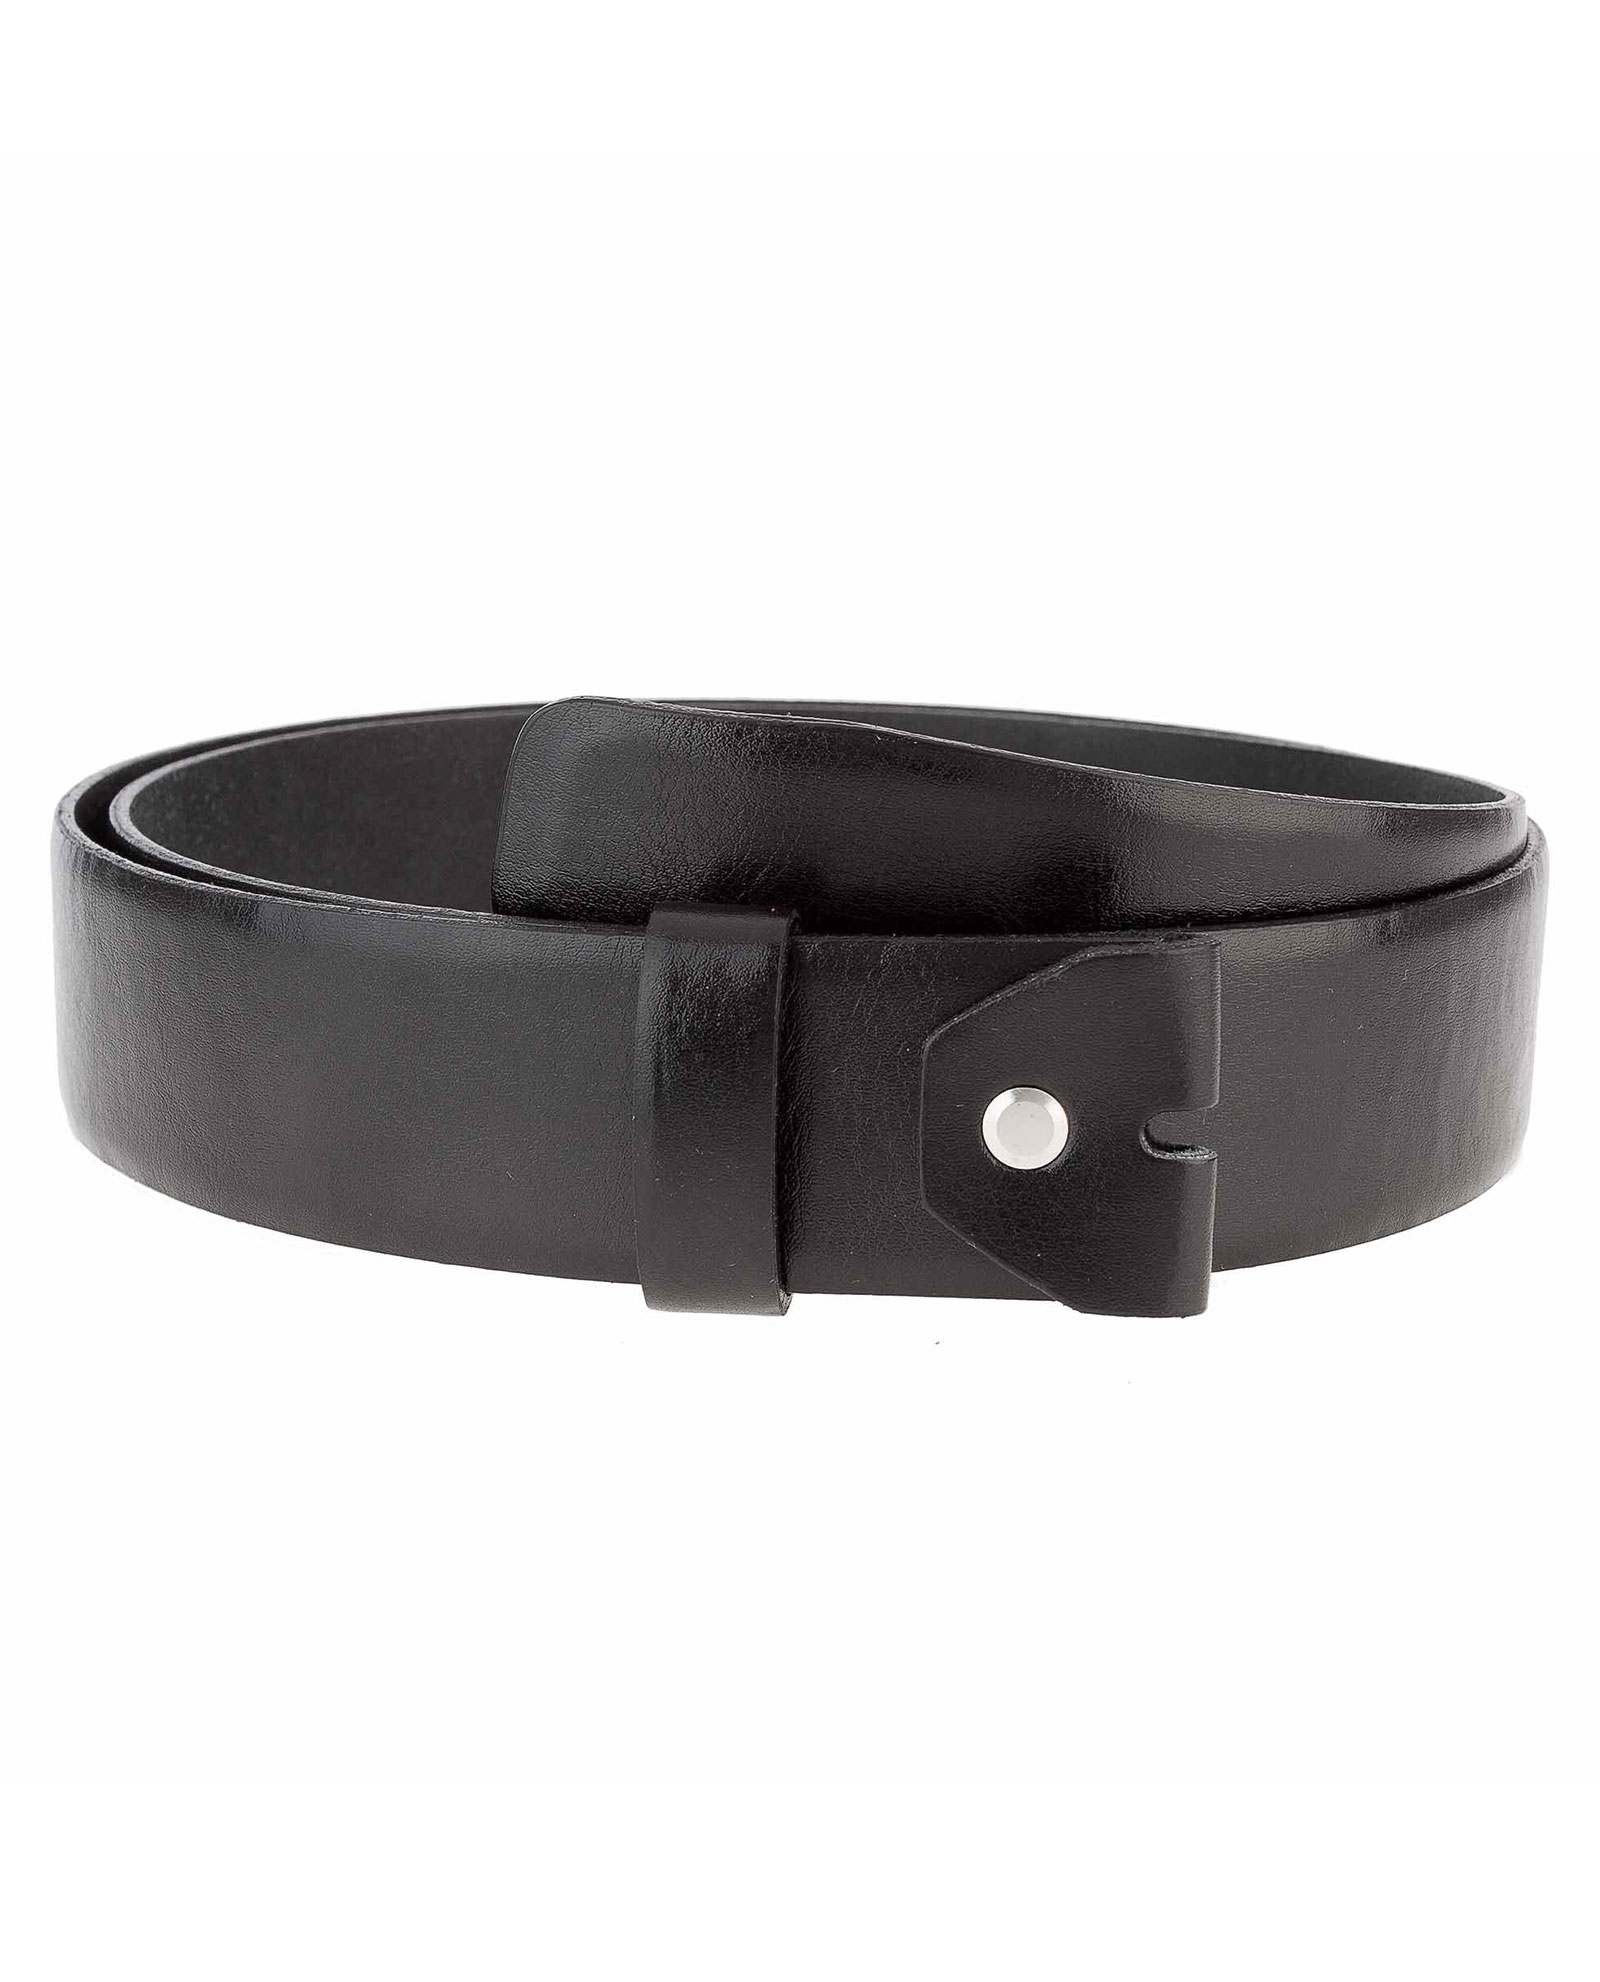 Buy Men's Soft Leather Belt Strap - 40 mm - LeatherBeltsOnline.com